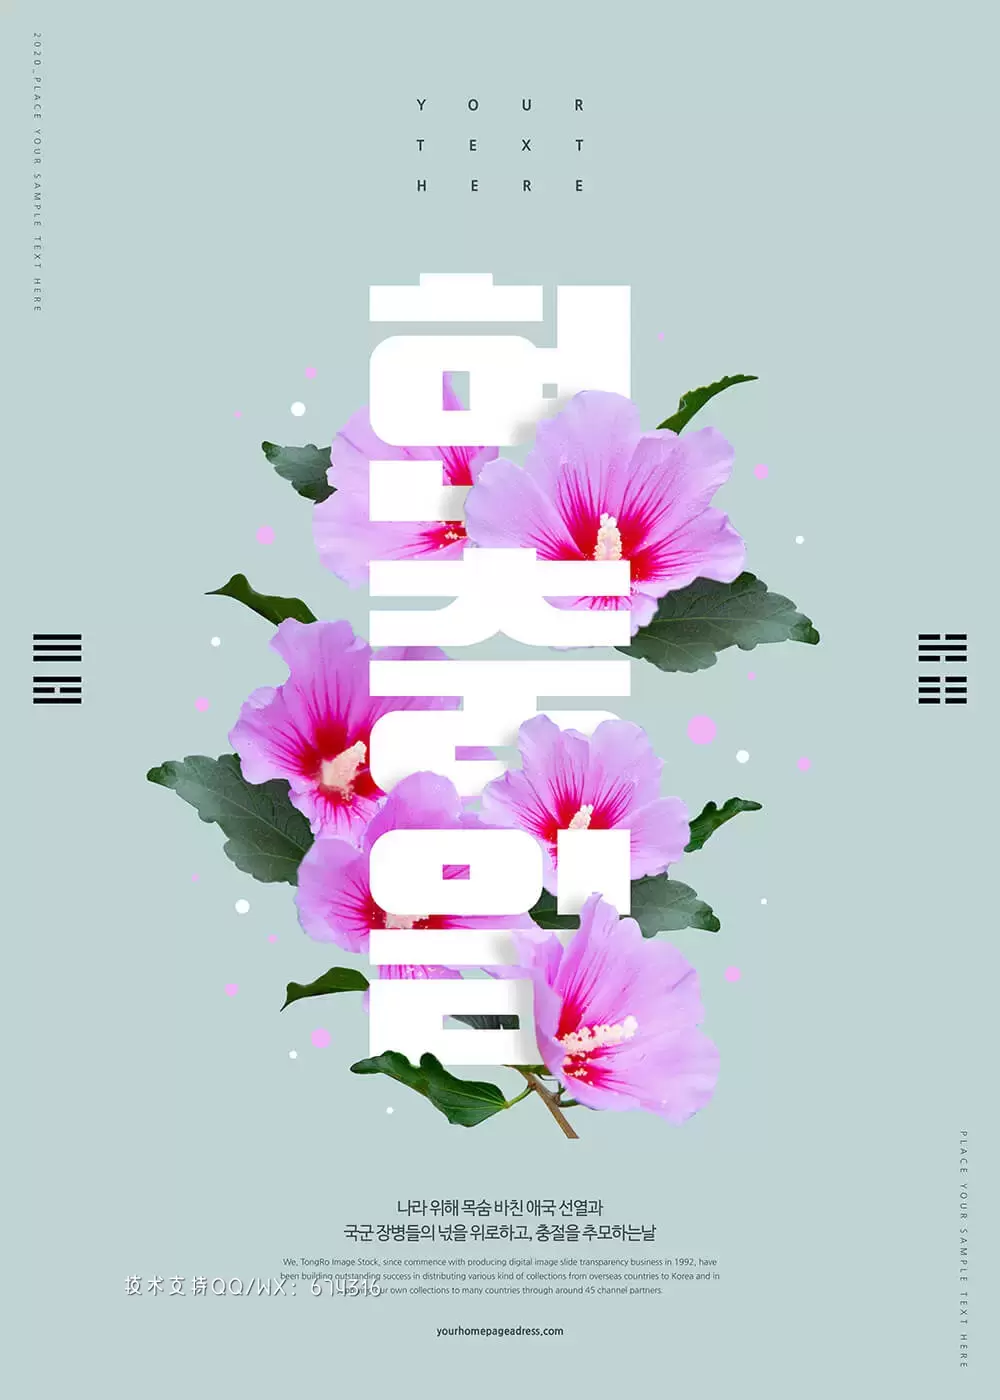 韩国特殊纪念日海报设计模板 (psd)插图